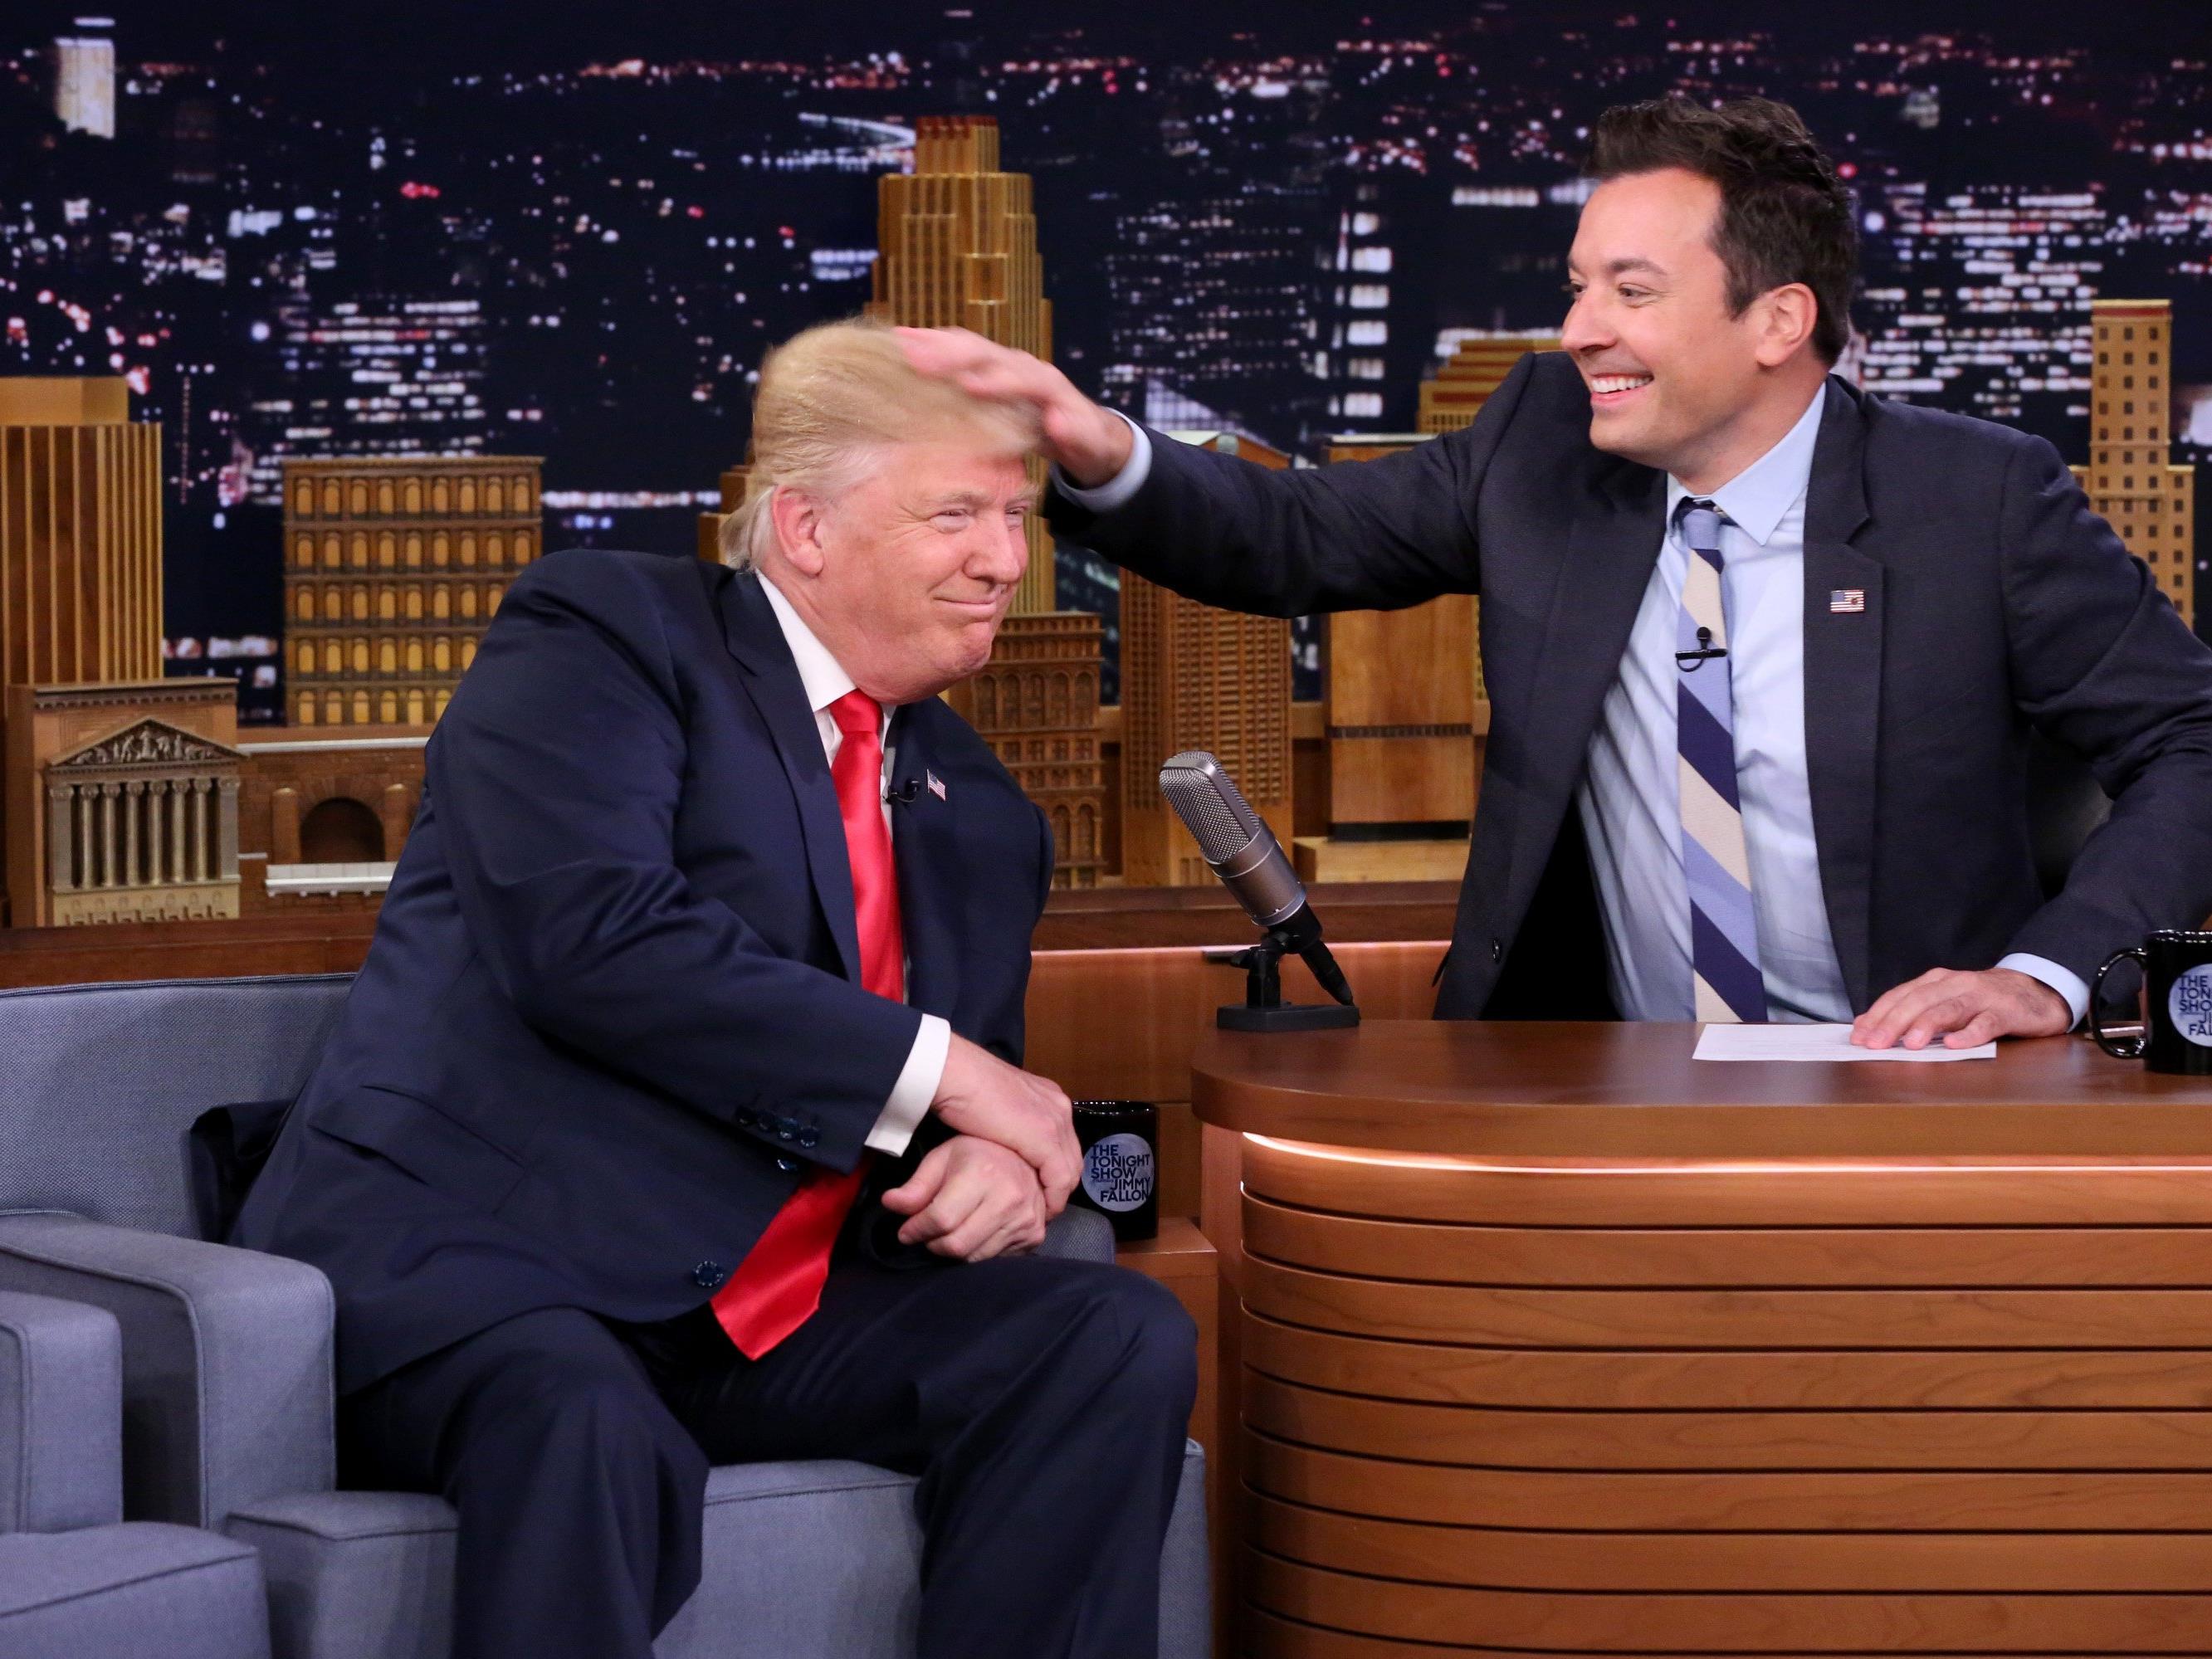 Der Moderator Jimmy Fallon zog kräftig an Trumps Haar.